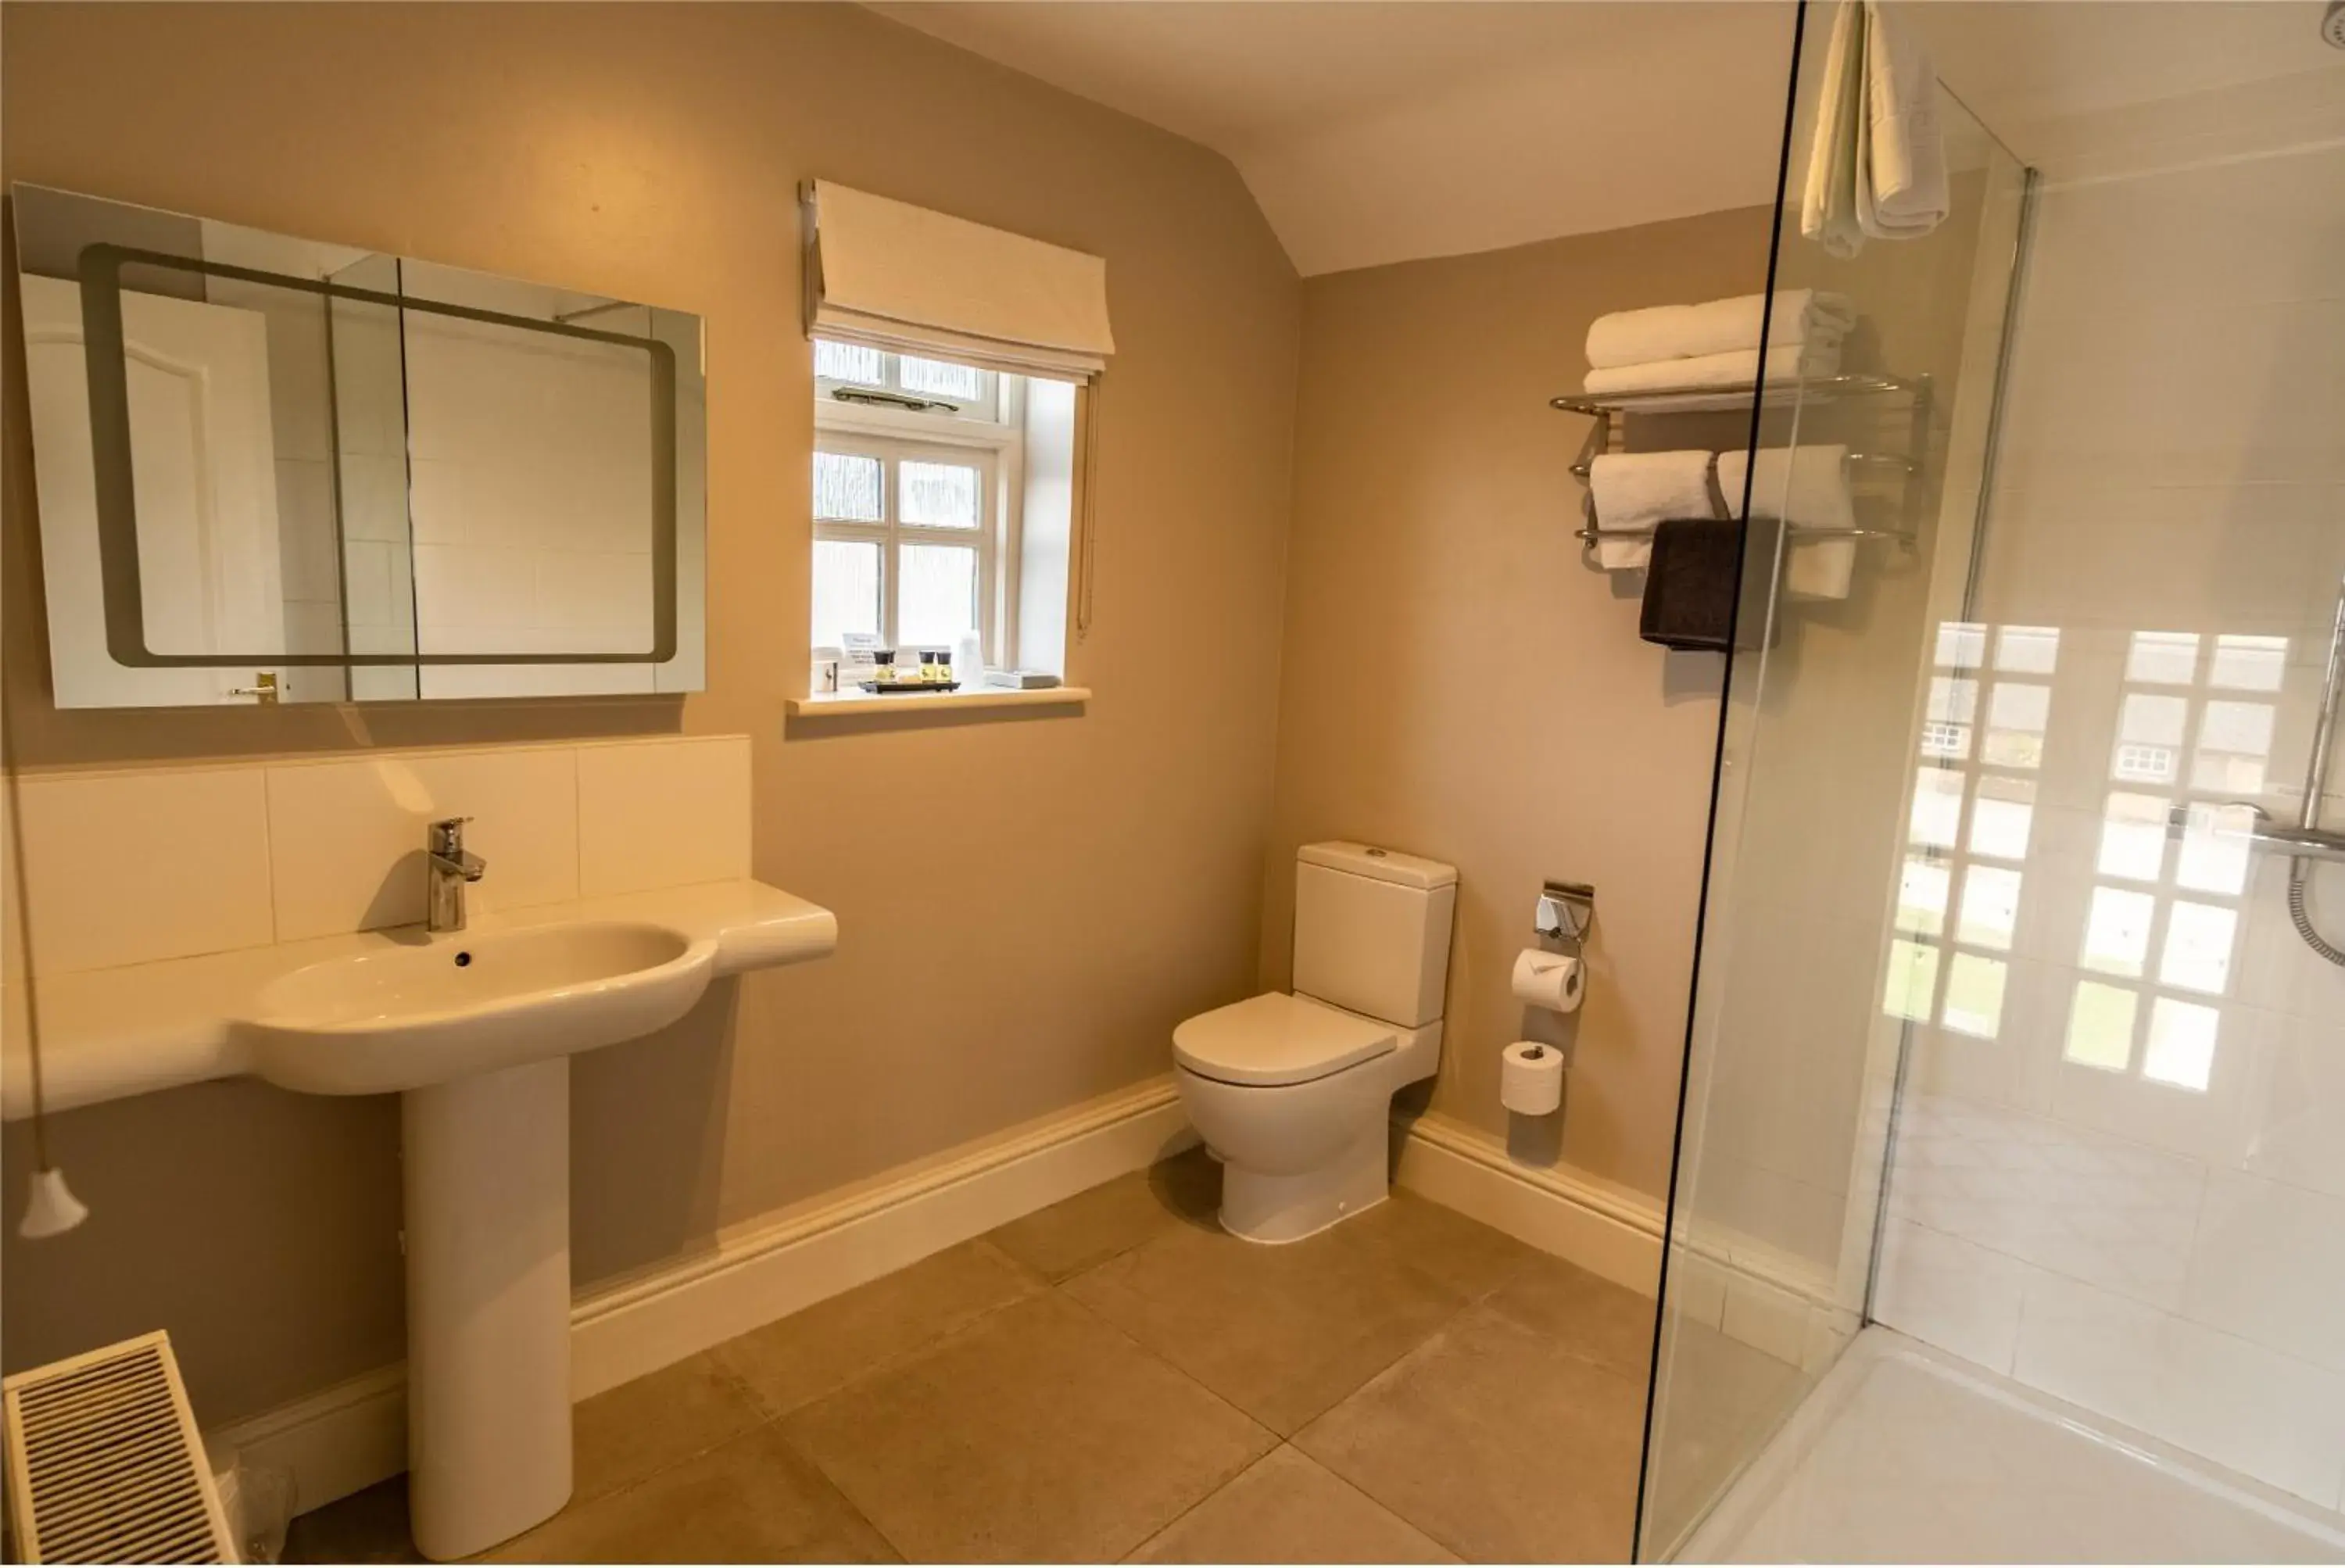 Bathroom in Donington Park Farmhouse Hotel